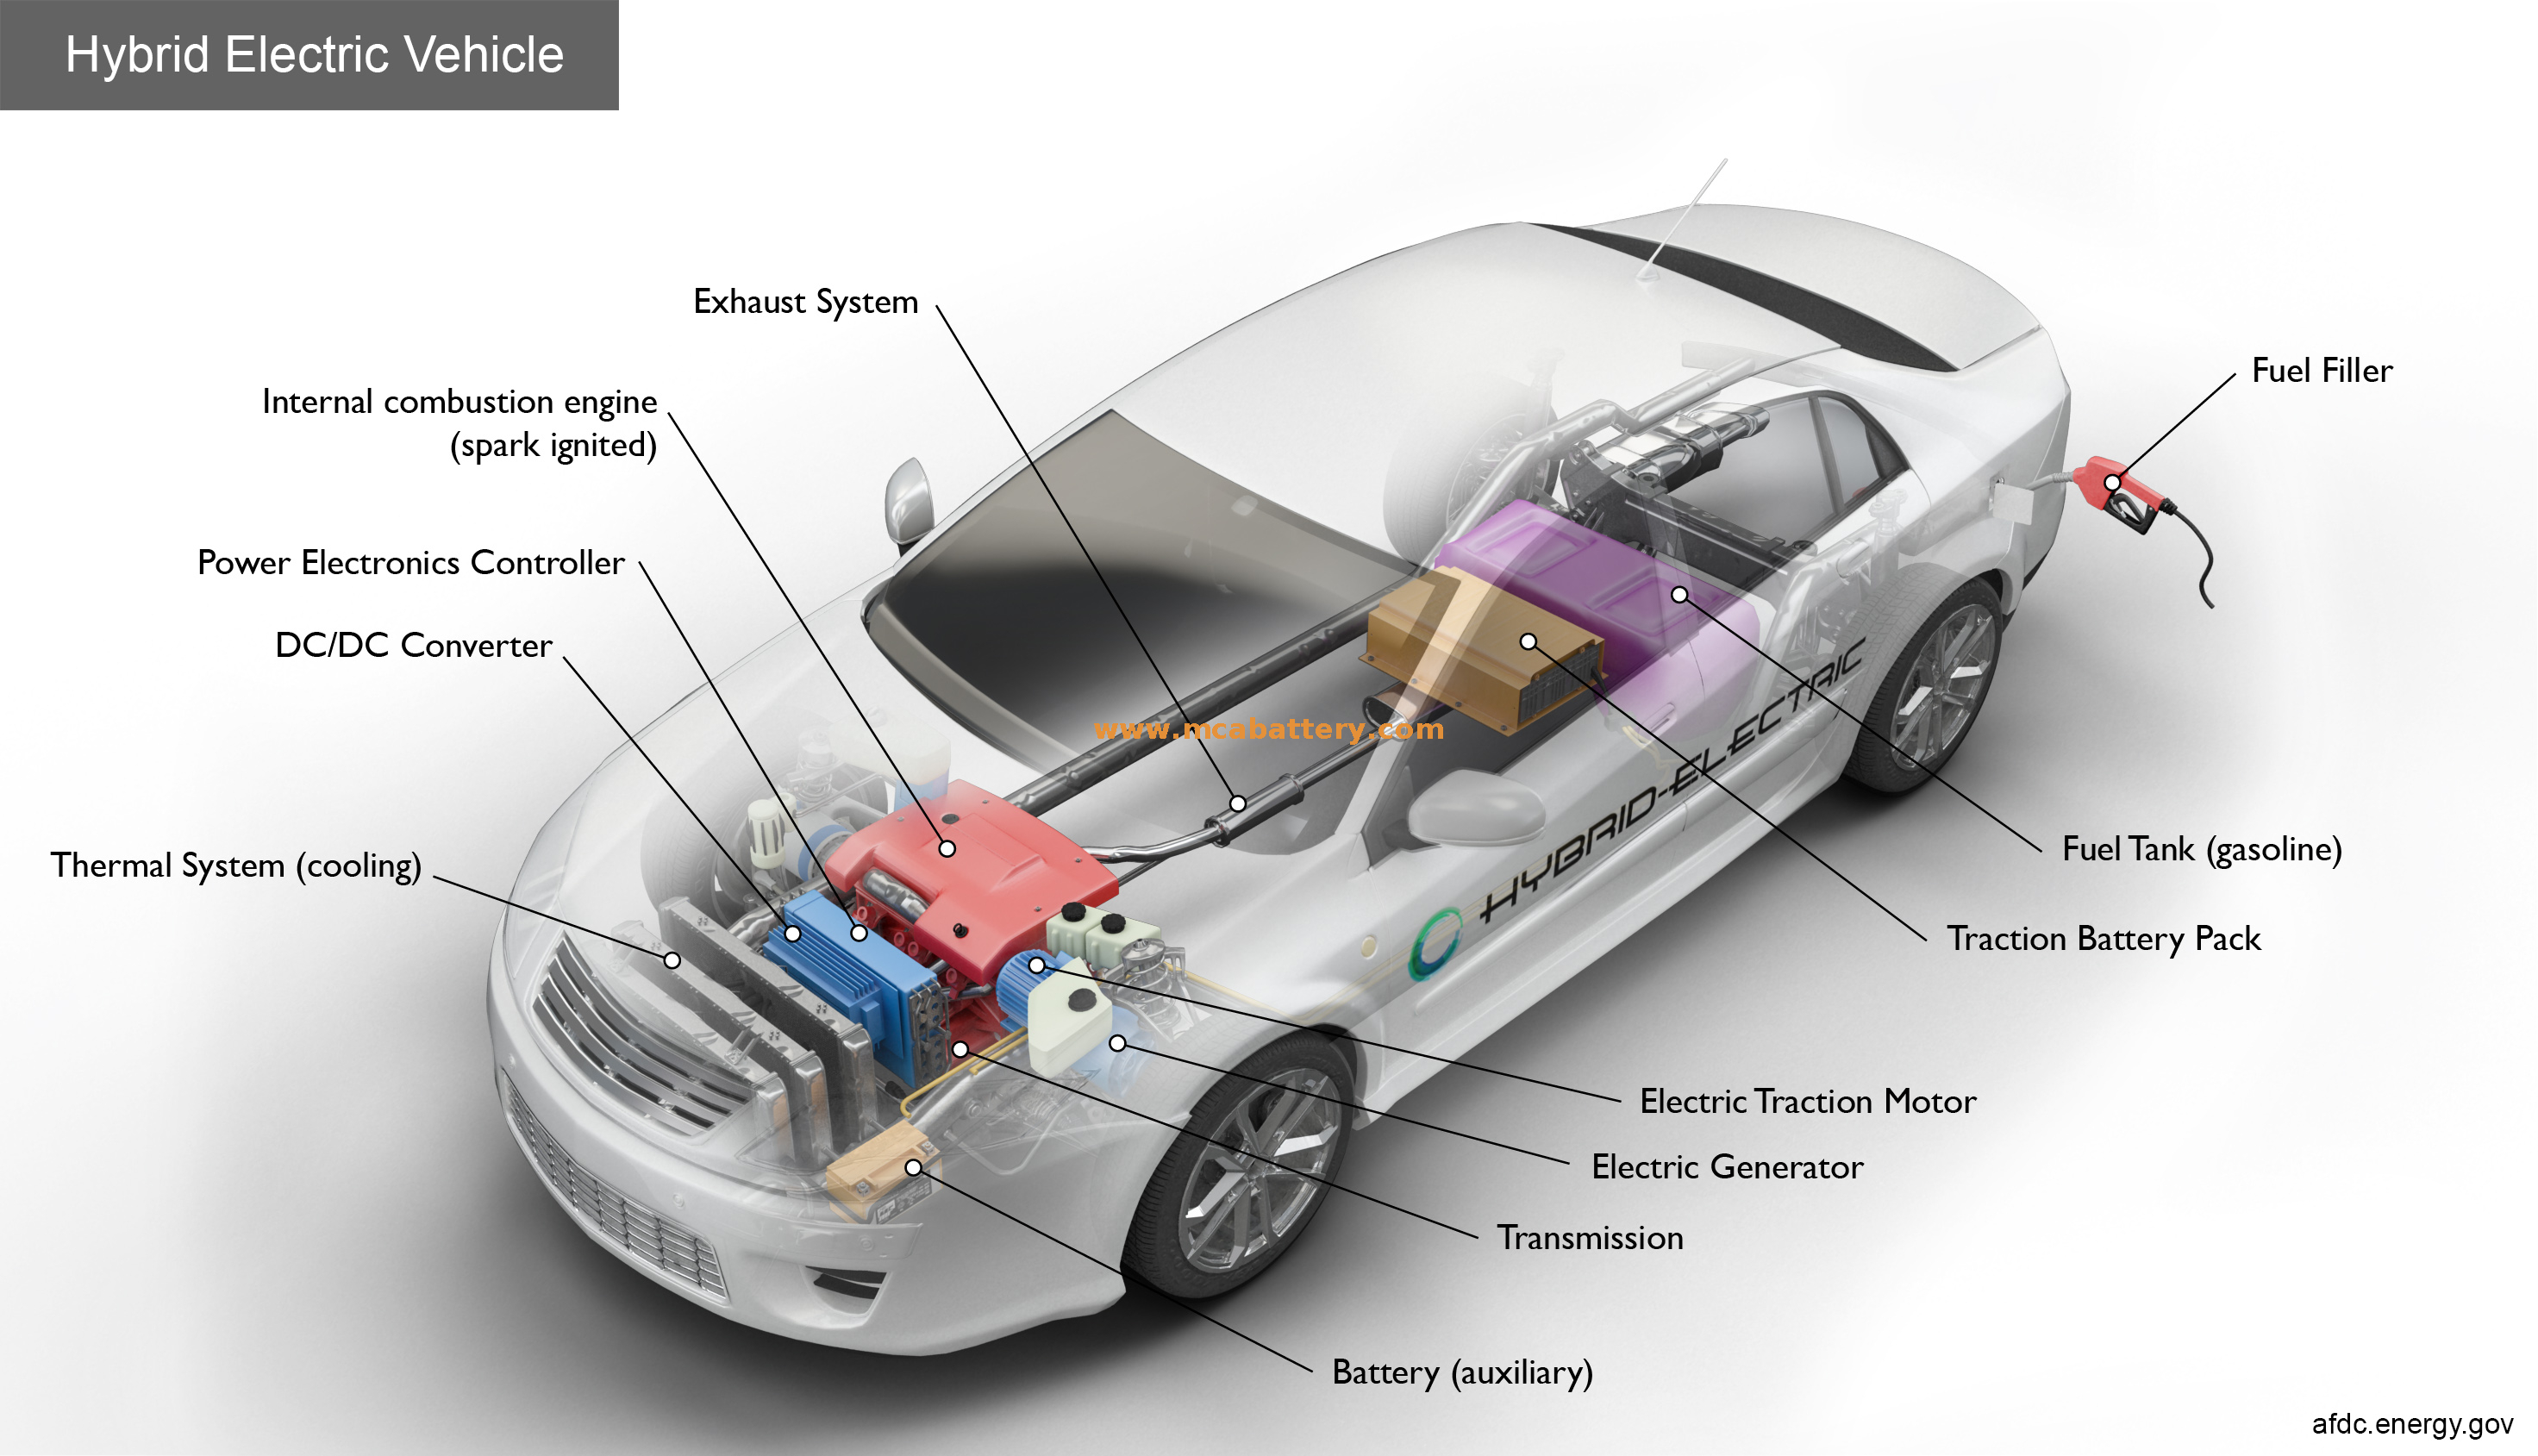 Batería Start-Stop Agm de baja tasa de descarga 80ah para vehículo